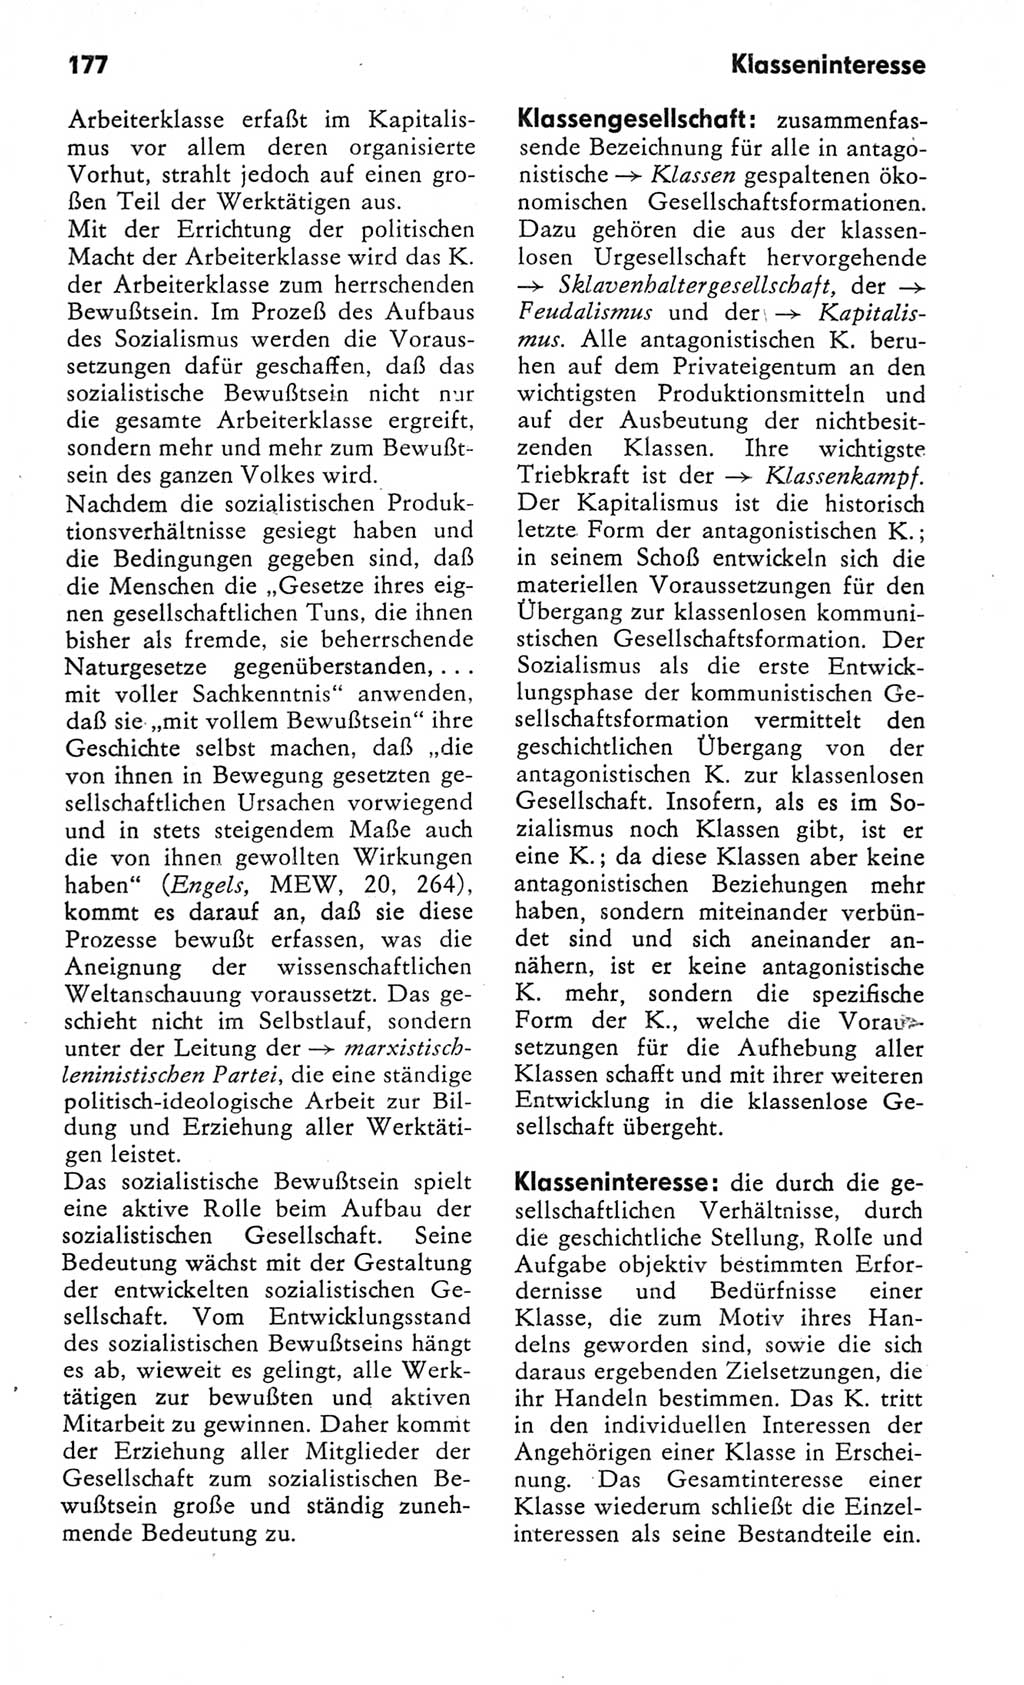 Kleines Wörterbuch der marxistisch-leninistischen Philosophie [Deutsche Demokratische Republik (DDR)] 1982, Seite 177 (Kl. Wb. ML Phil. DDR 1982, S. 177)